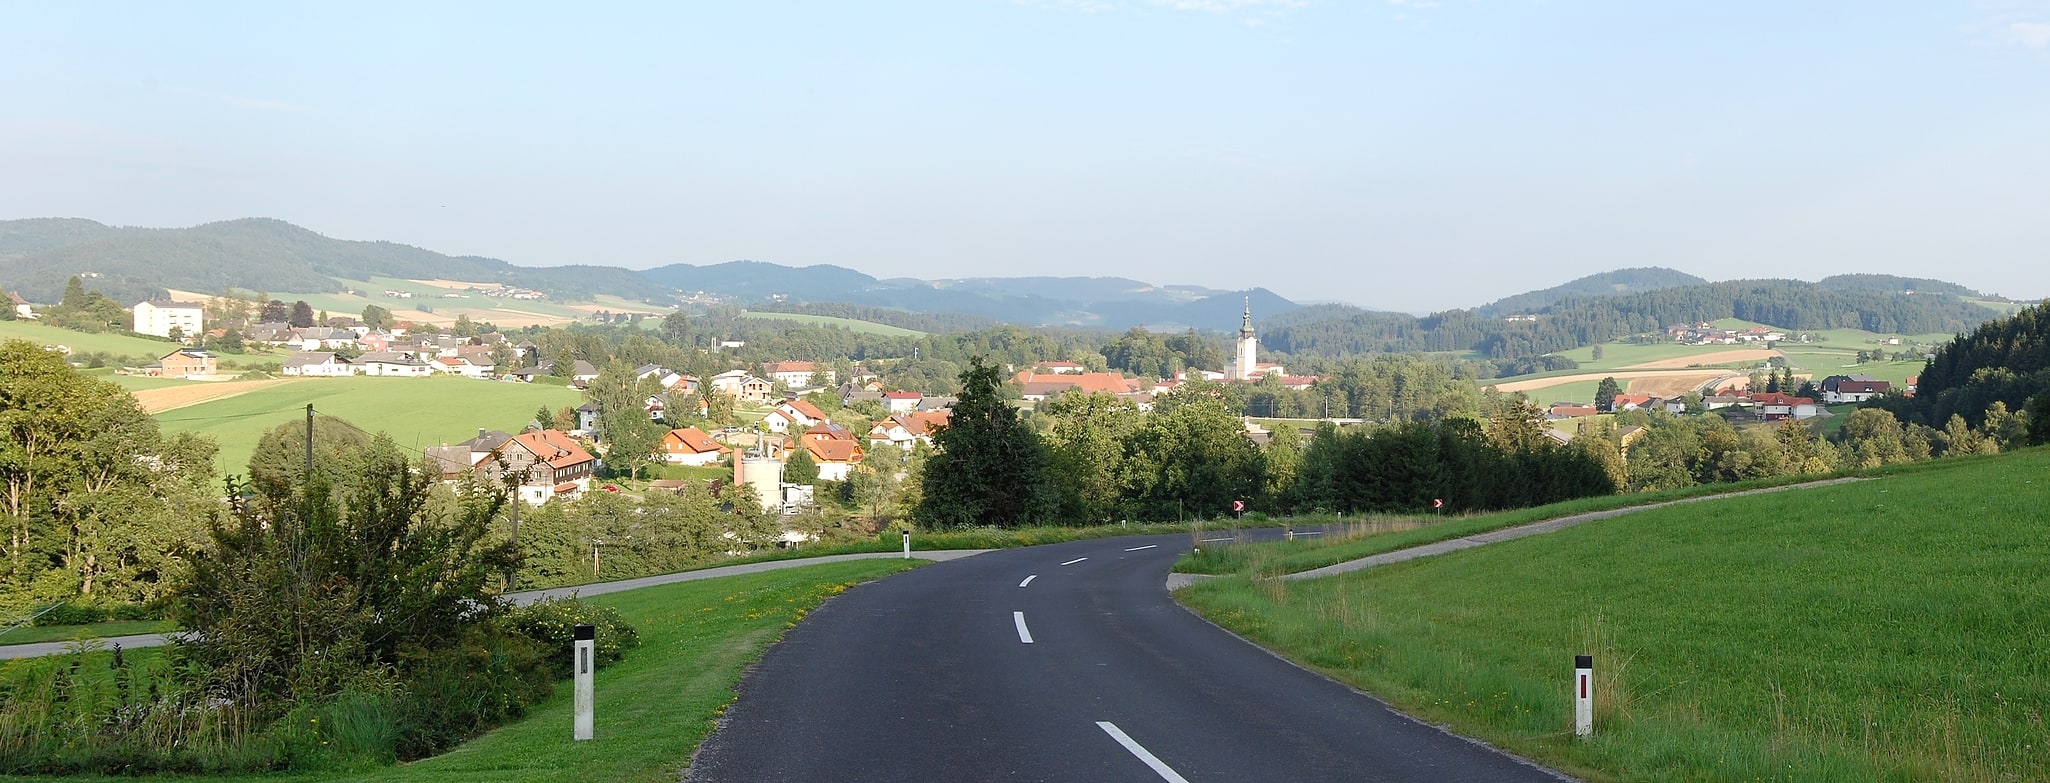 Schlägl, Autriche